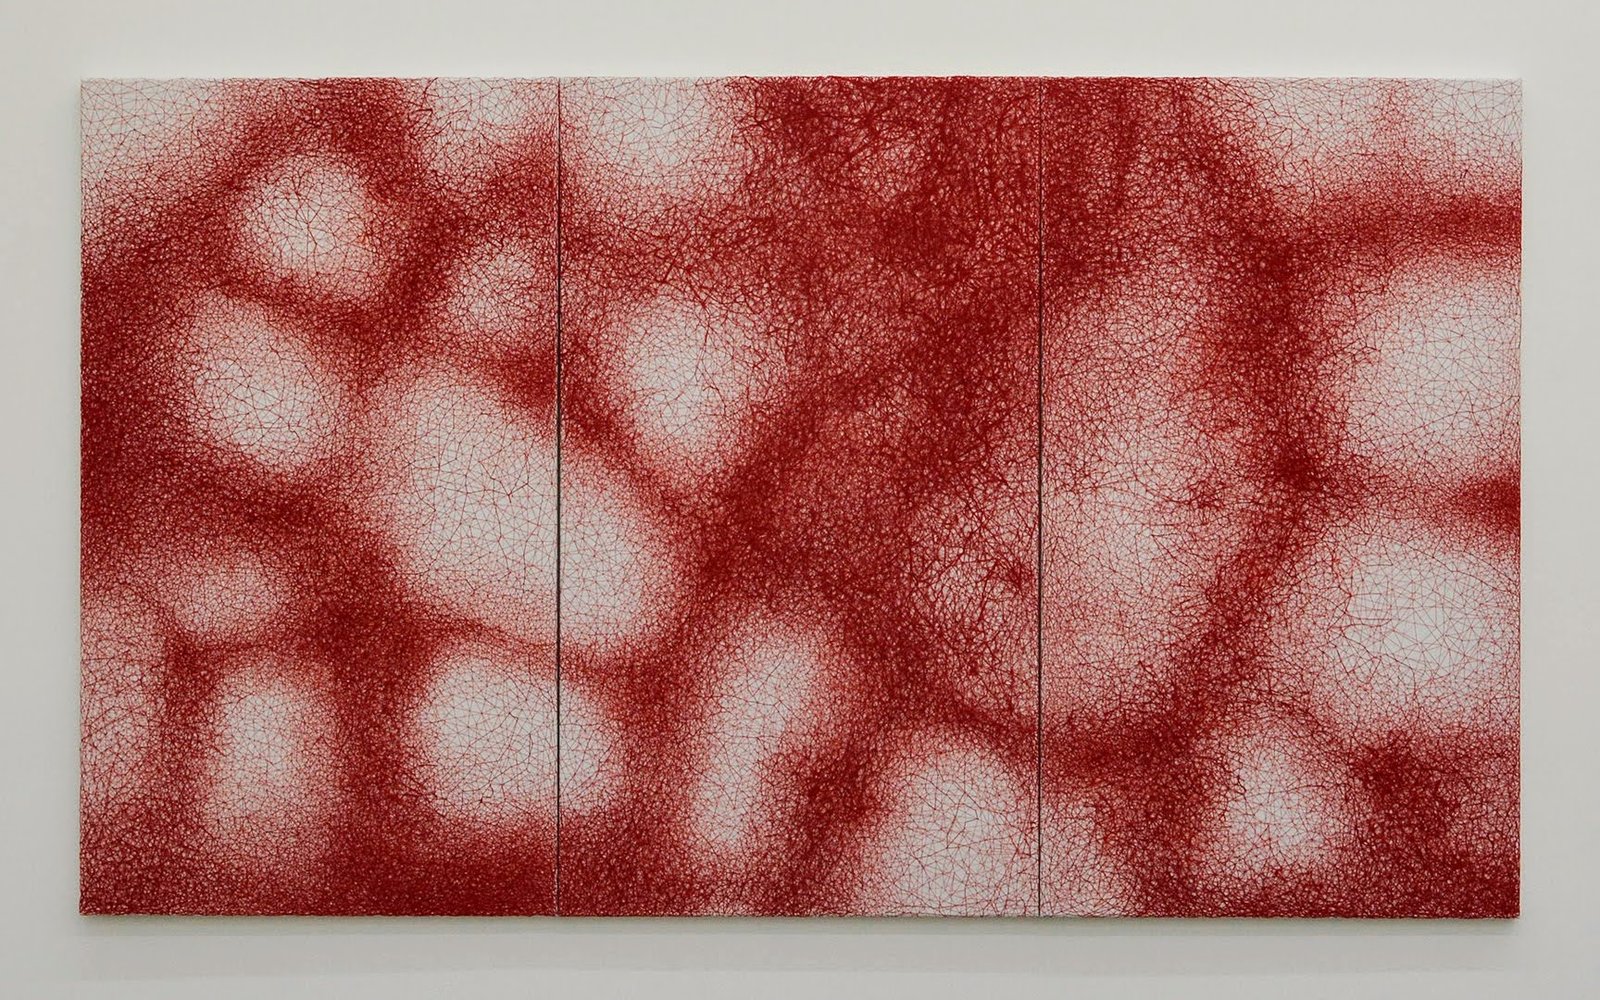 Peau, 2016, fil rouge sur toile, triptyque de Chiharu Shiota